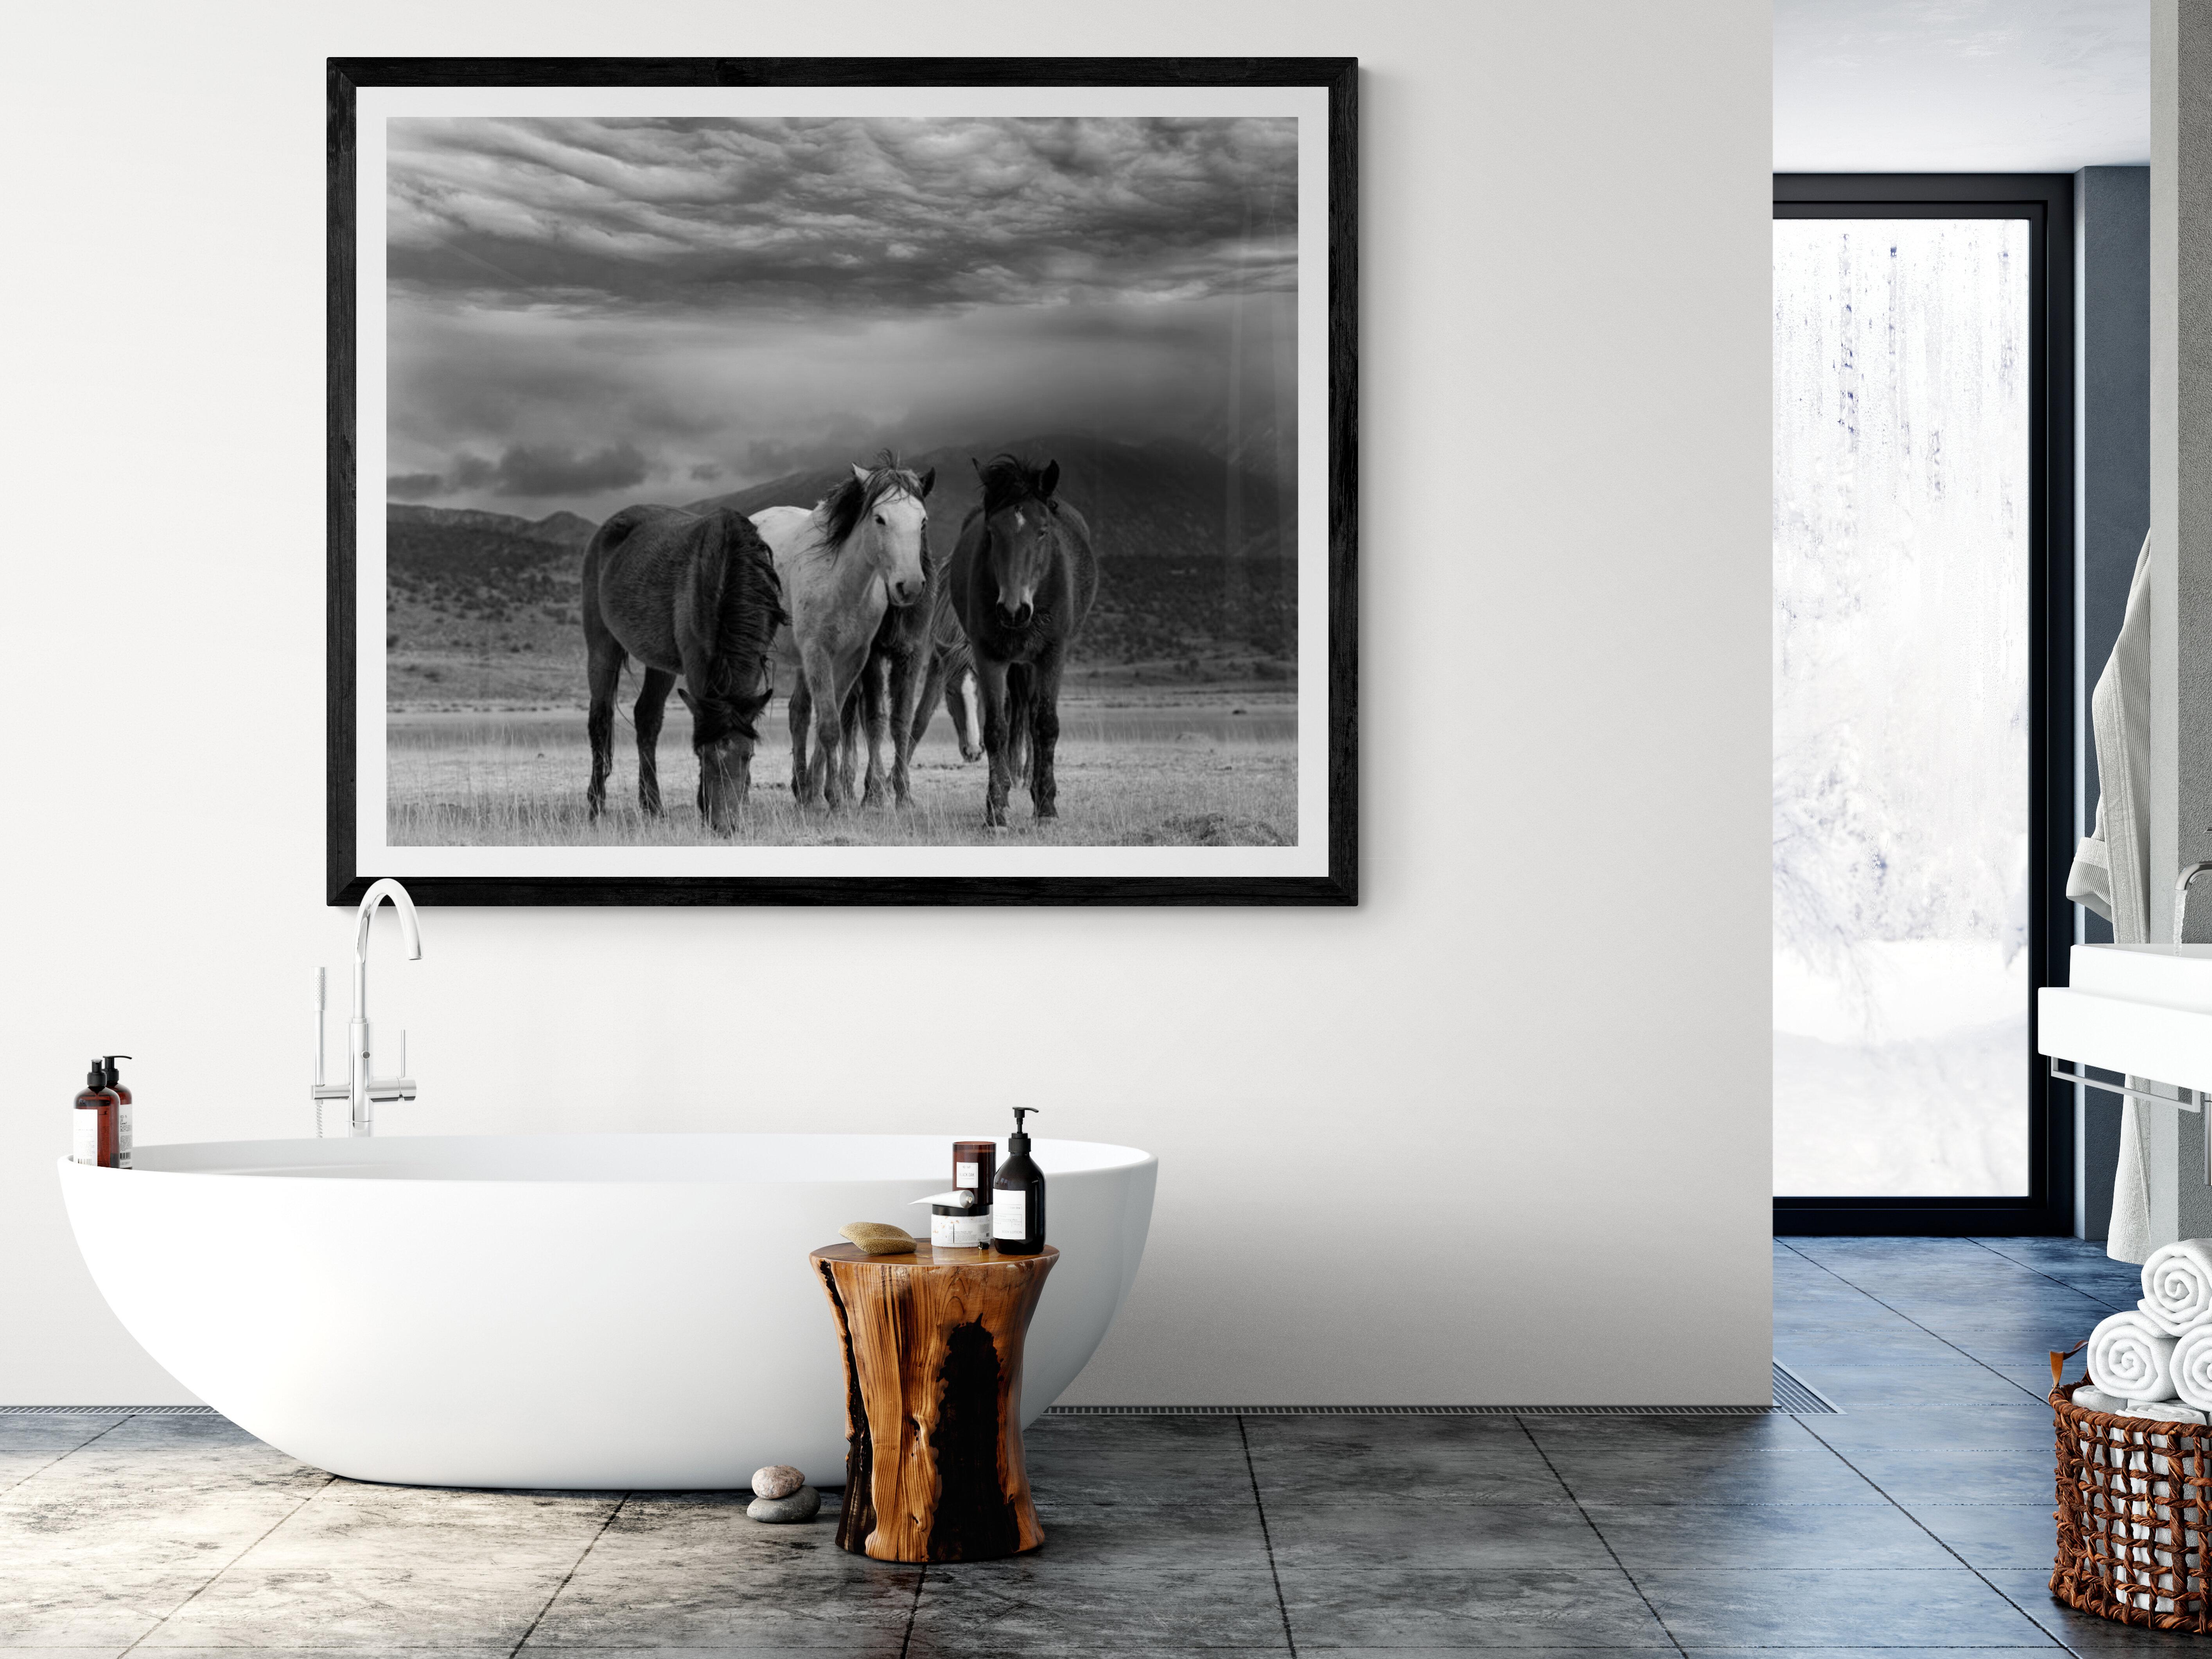 Dies ist eine zeitgenössische Schwarz-Weiß-Fotografie von nordamerikanischen Wildpferden
Fotografie von Shane Russeck
Gedruckt auf Archivierungspapier 
Auflage von 25 Stück
Signiert und nummeriert
Einrahmung verfügbar. Erkundigen Sie sich nach den